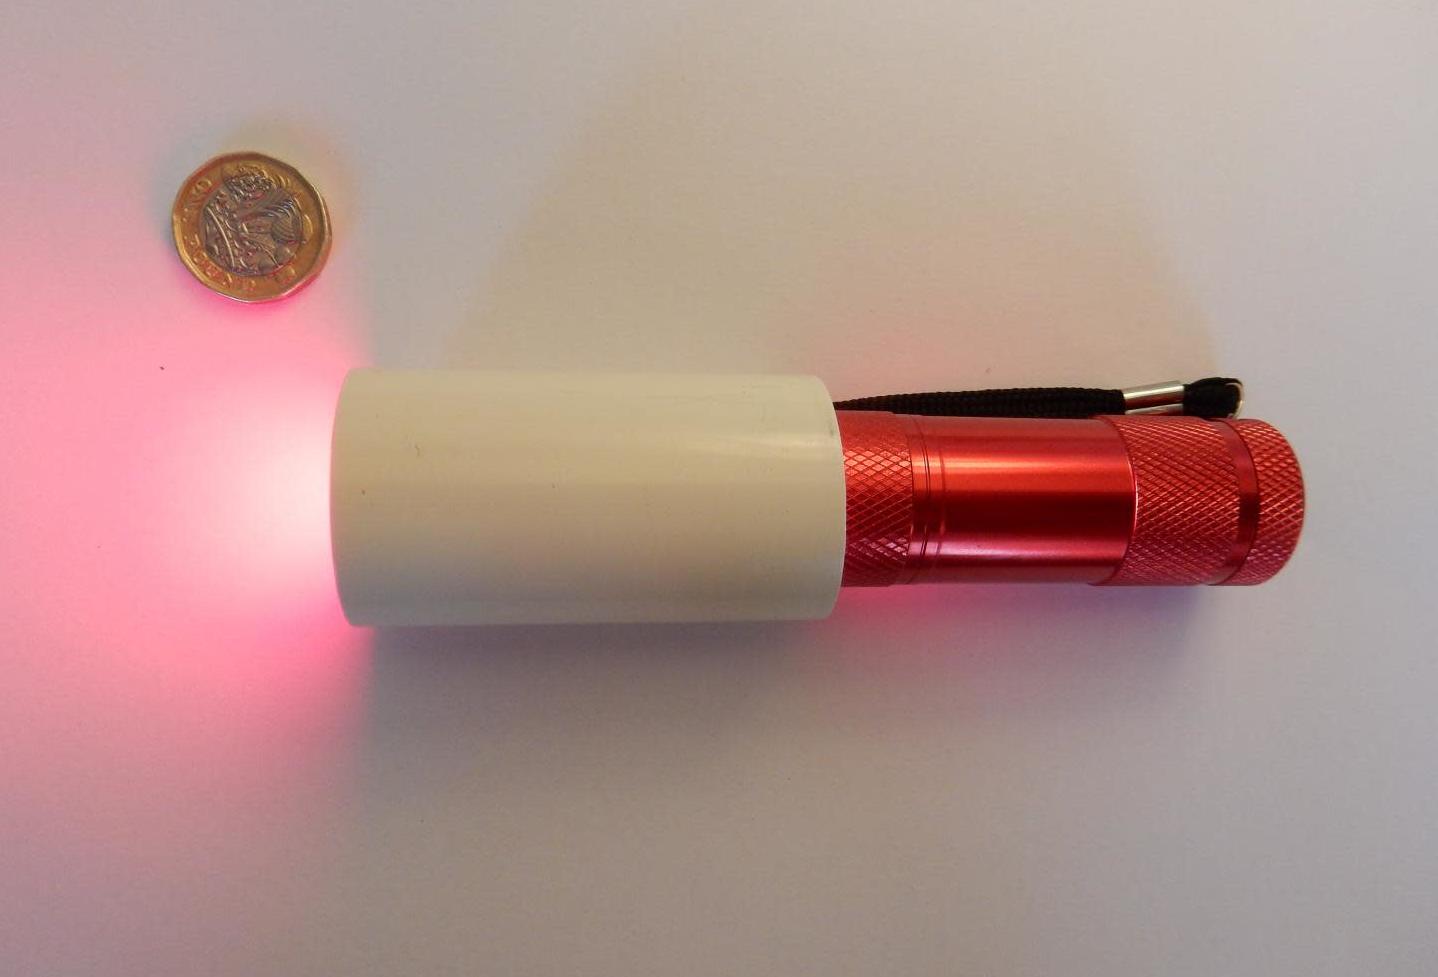 Lanterna de luz vermelha usada no estudo. Crédito: University College London